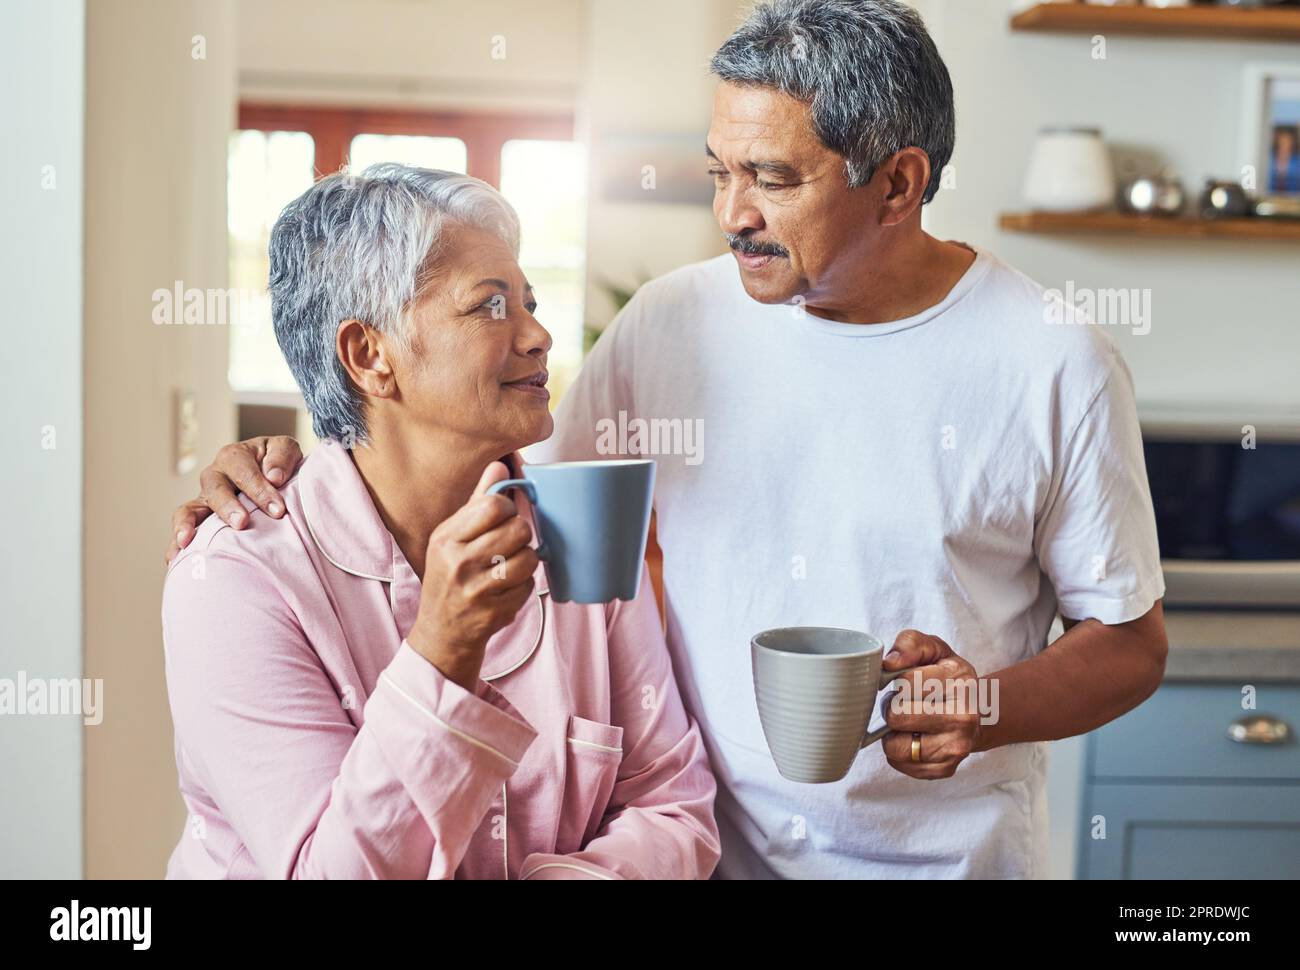 E' cosi' che cominciamo le nostre mattine. una coppia di anziani allegri che si tengono a vicenda mentre si guardano negli occhi e bevono caffè a casa durante il giorno. Foto Stock